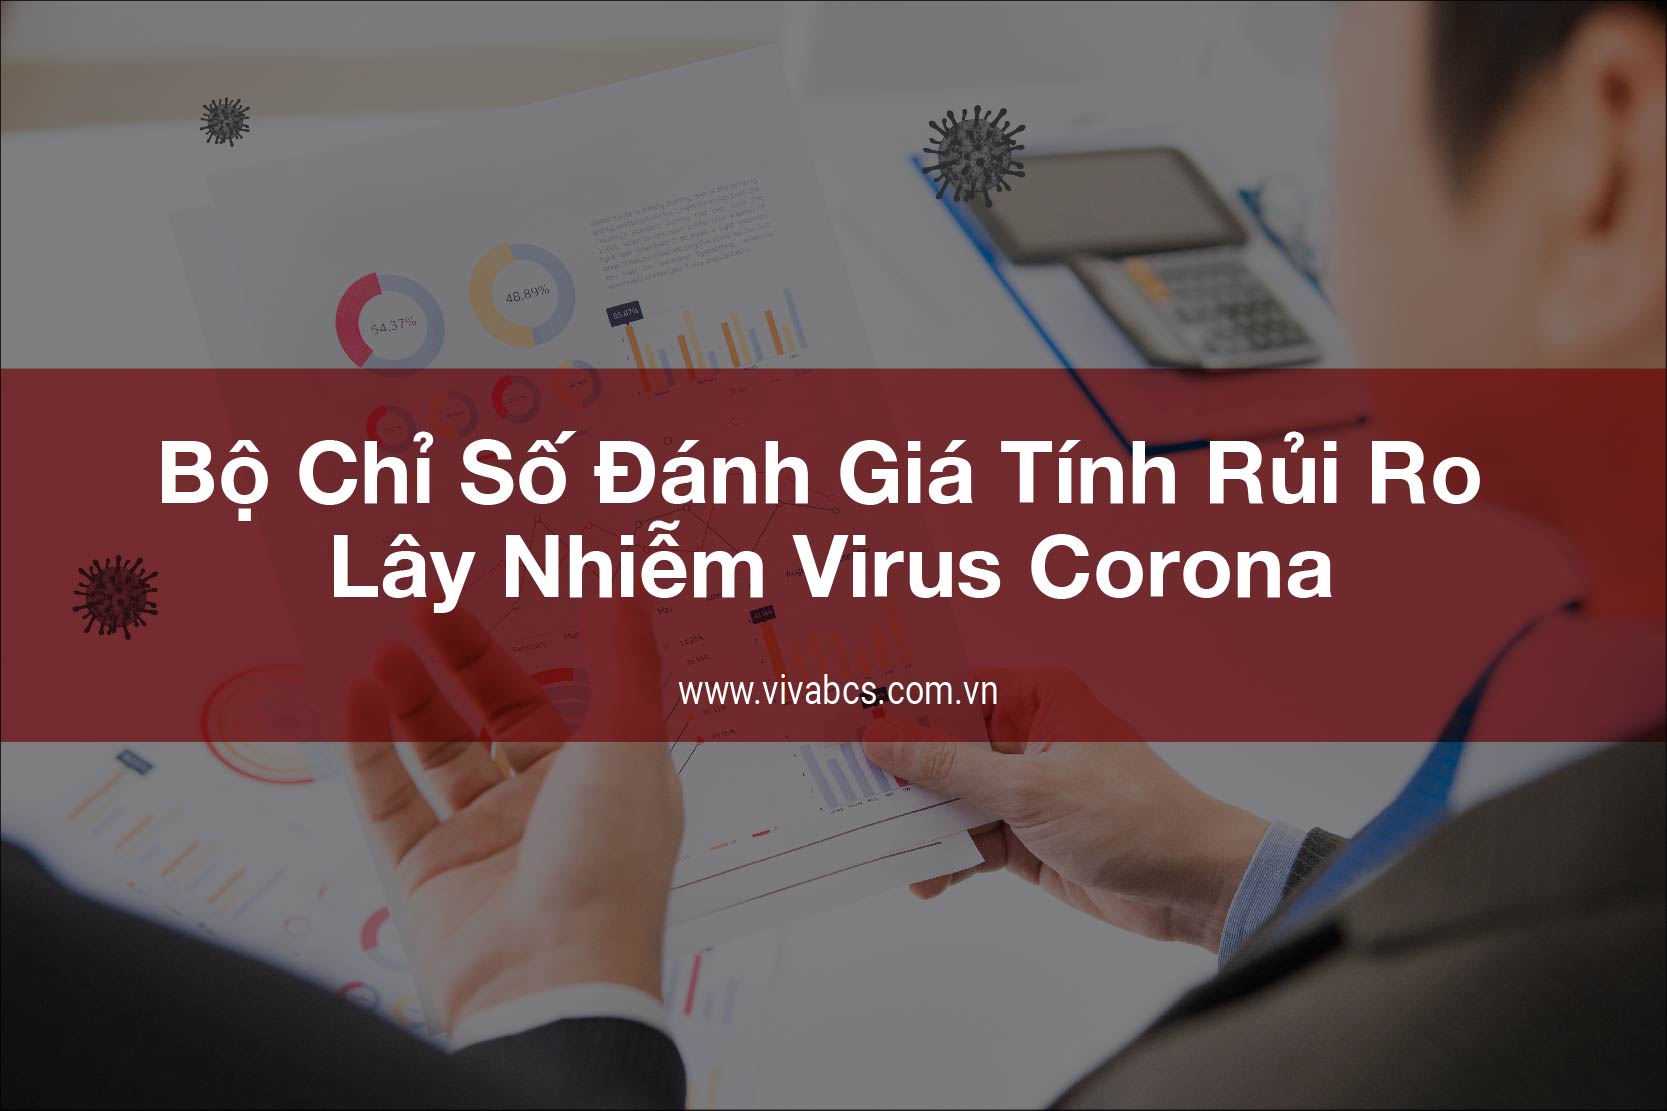 Bộ chỉ số lây nhiễm virus COVID của doanh nghiệp